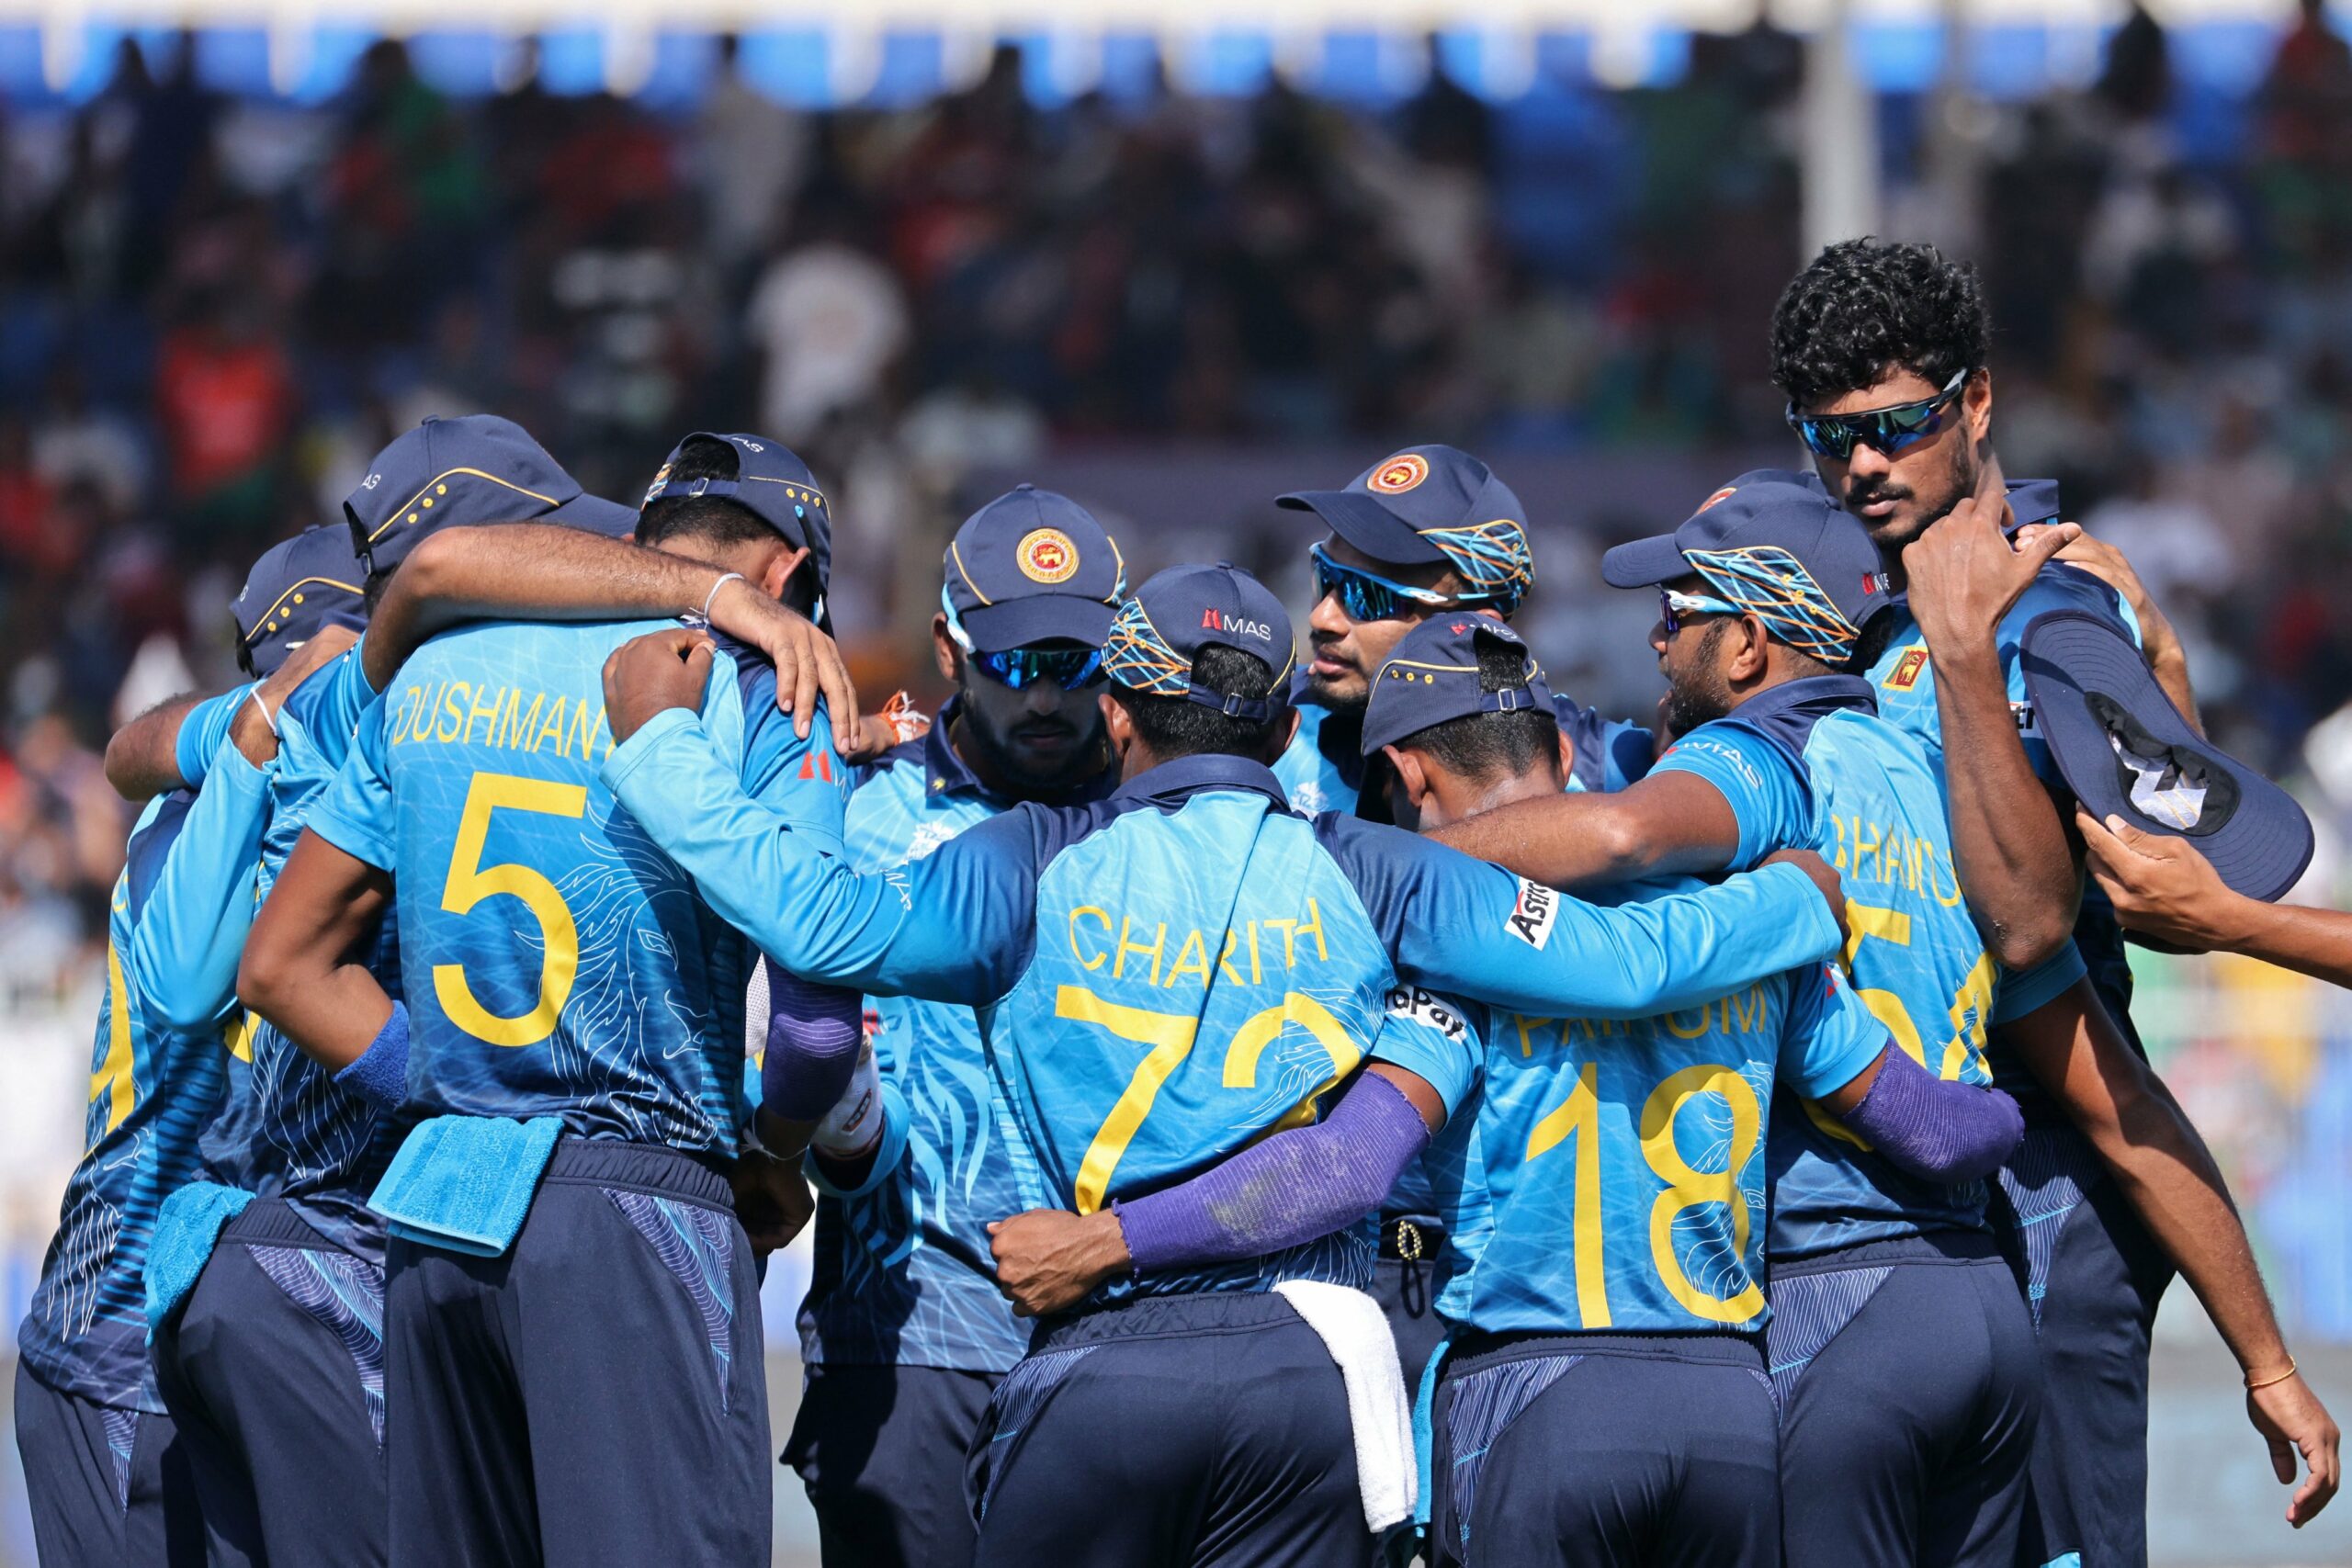 टी20 विश्व कप : असालंका बने श्रीलंकाई जीत के हीरो, बांग्लादेश पांच विकेट से परास्त